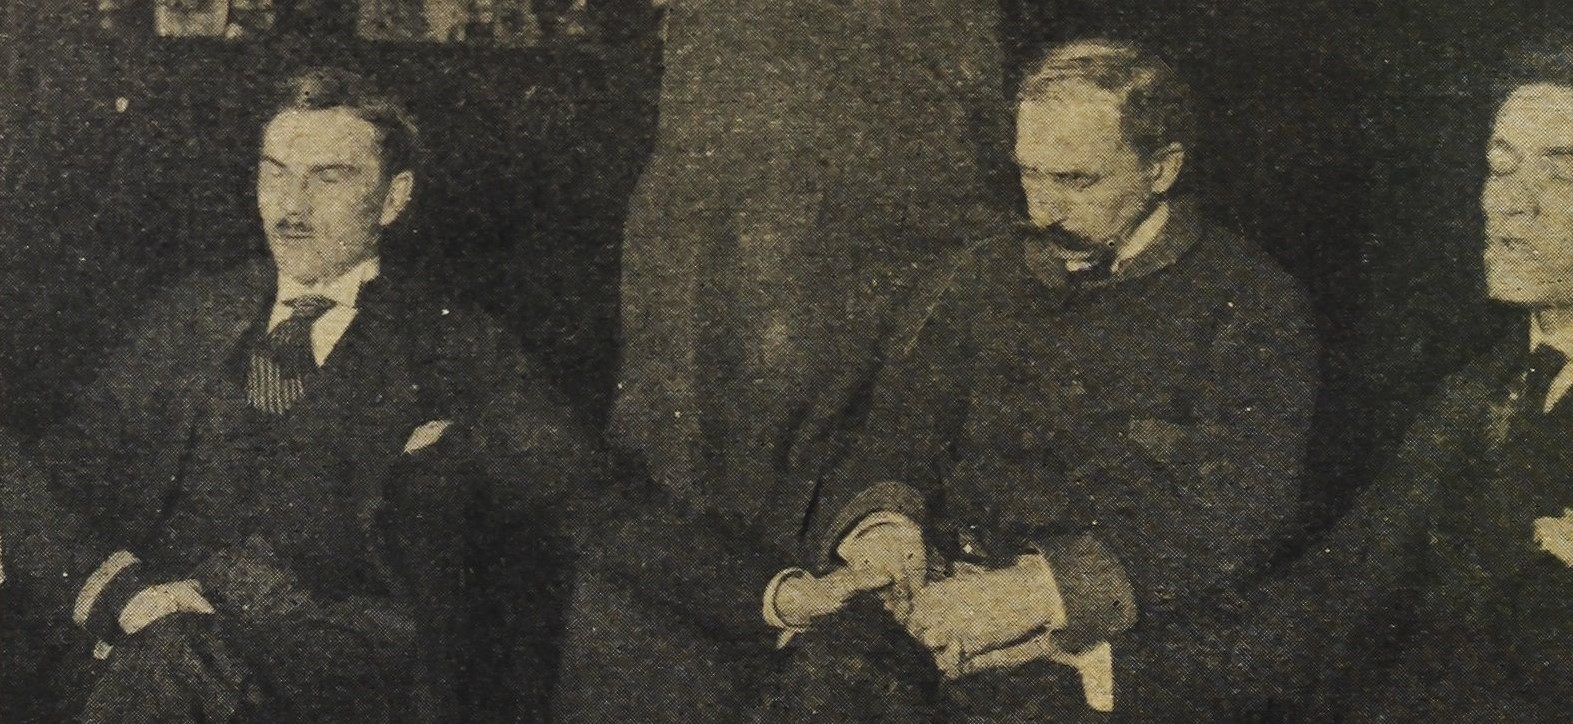 Franek Kluski podczas seansu spirytystycznego. Siedzi, trzyma za dłonie dwóch mężczyzn siedzących obok niego, wszyscy mają zamknięte oczy.